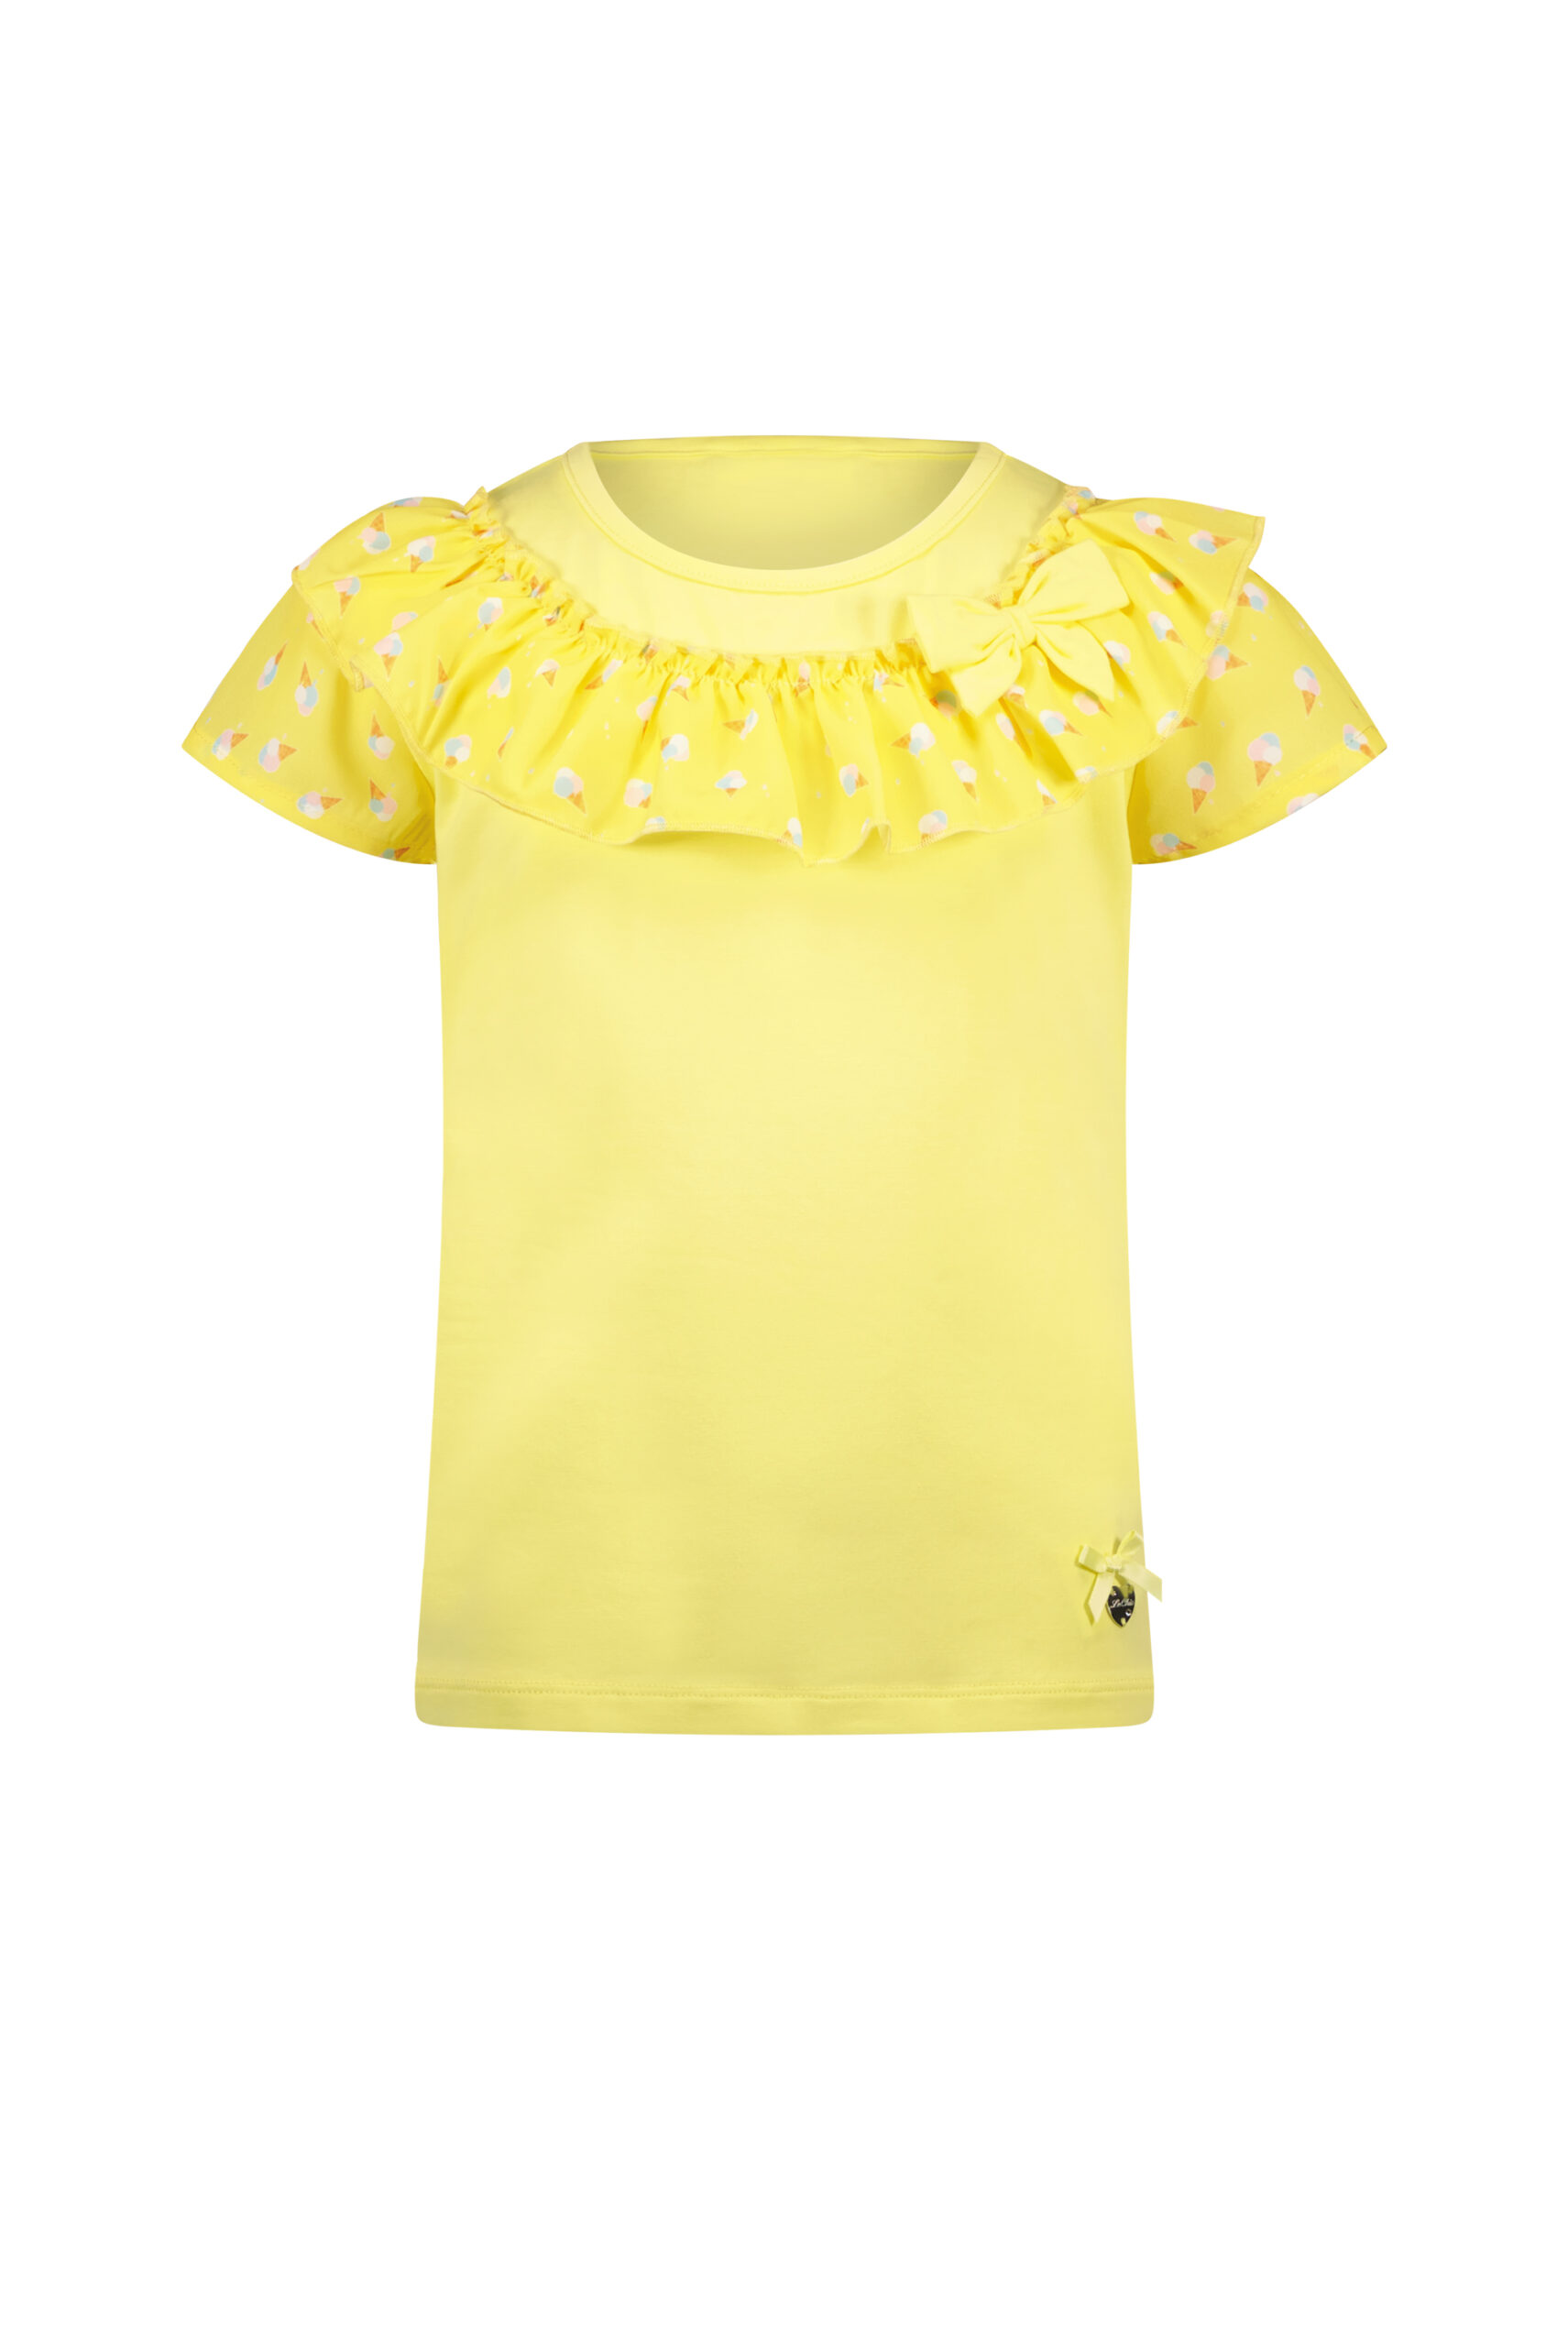 Le Chic geel shirt met ijsjesprint en details